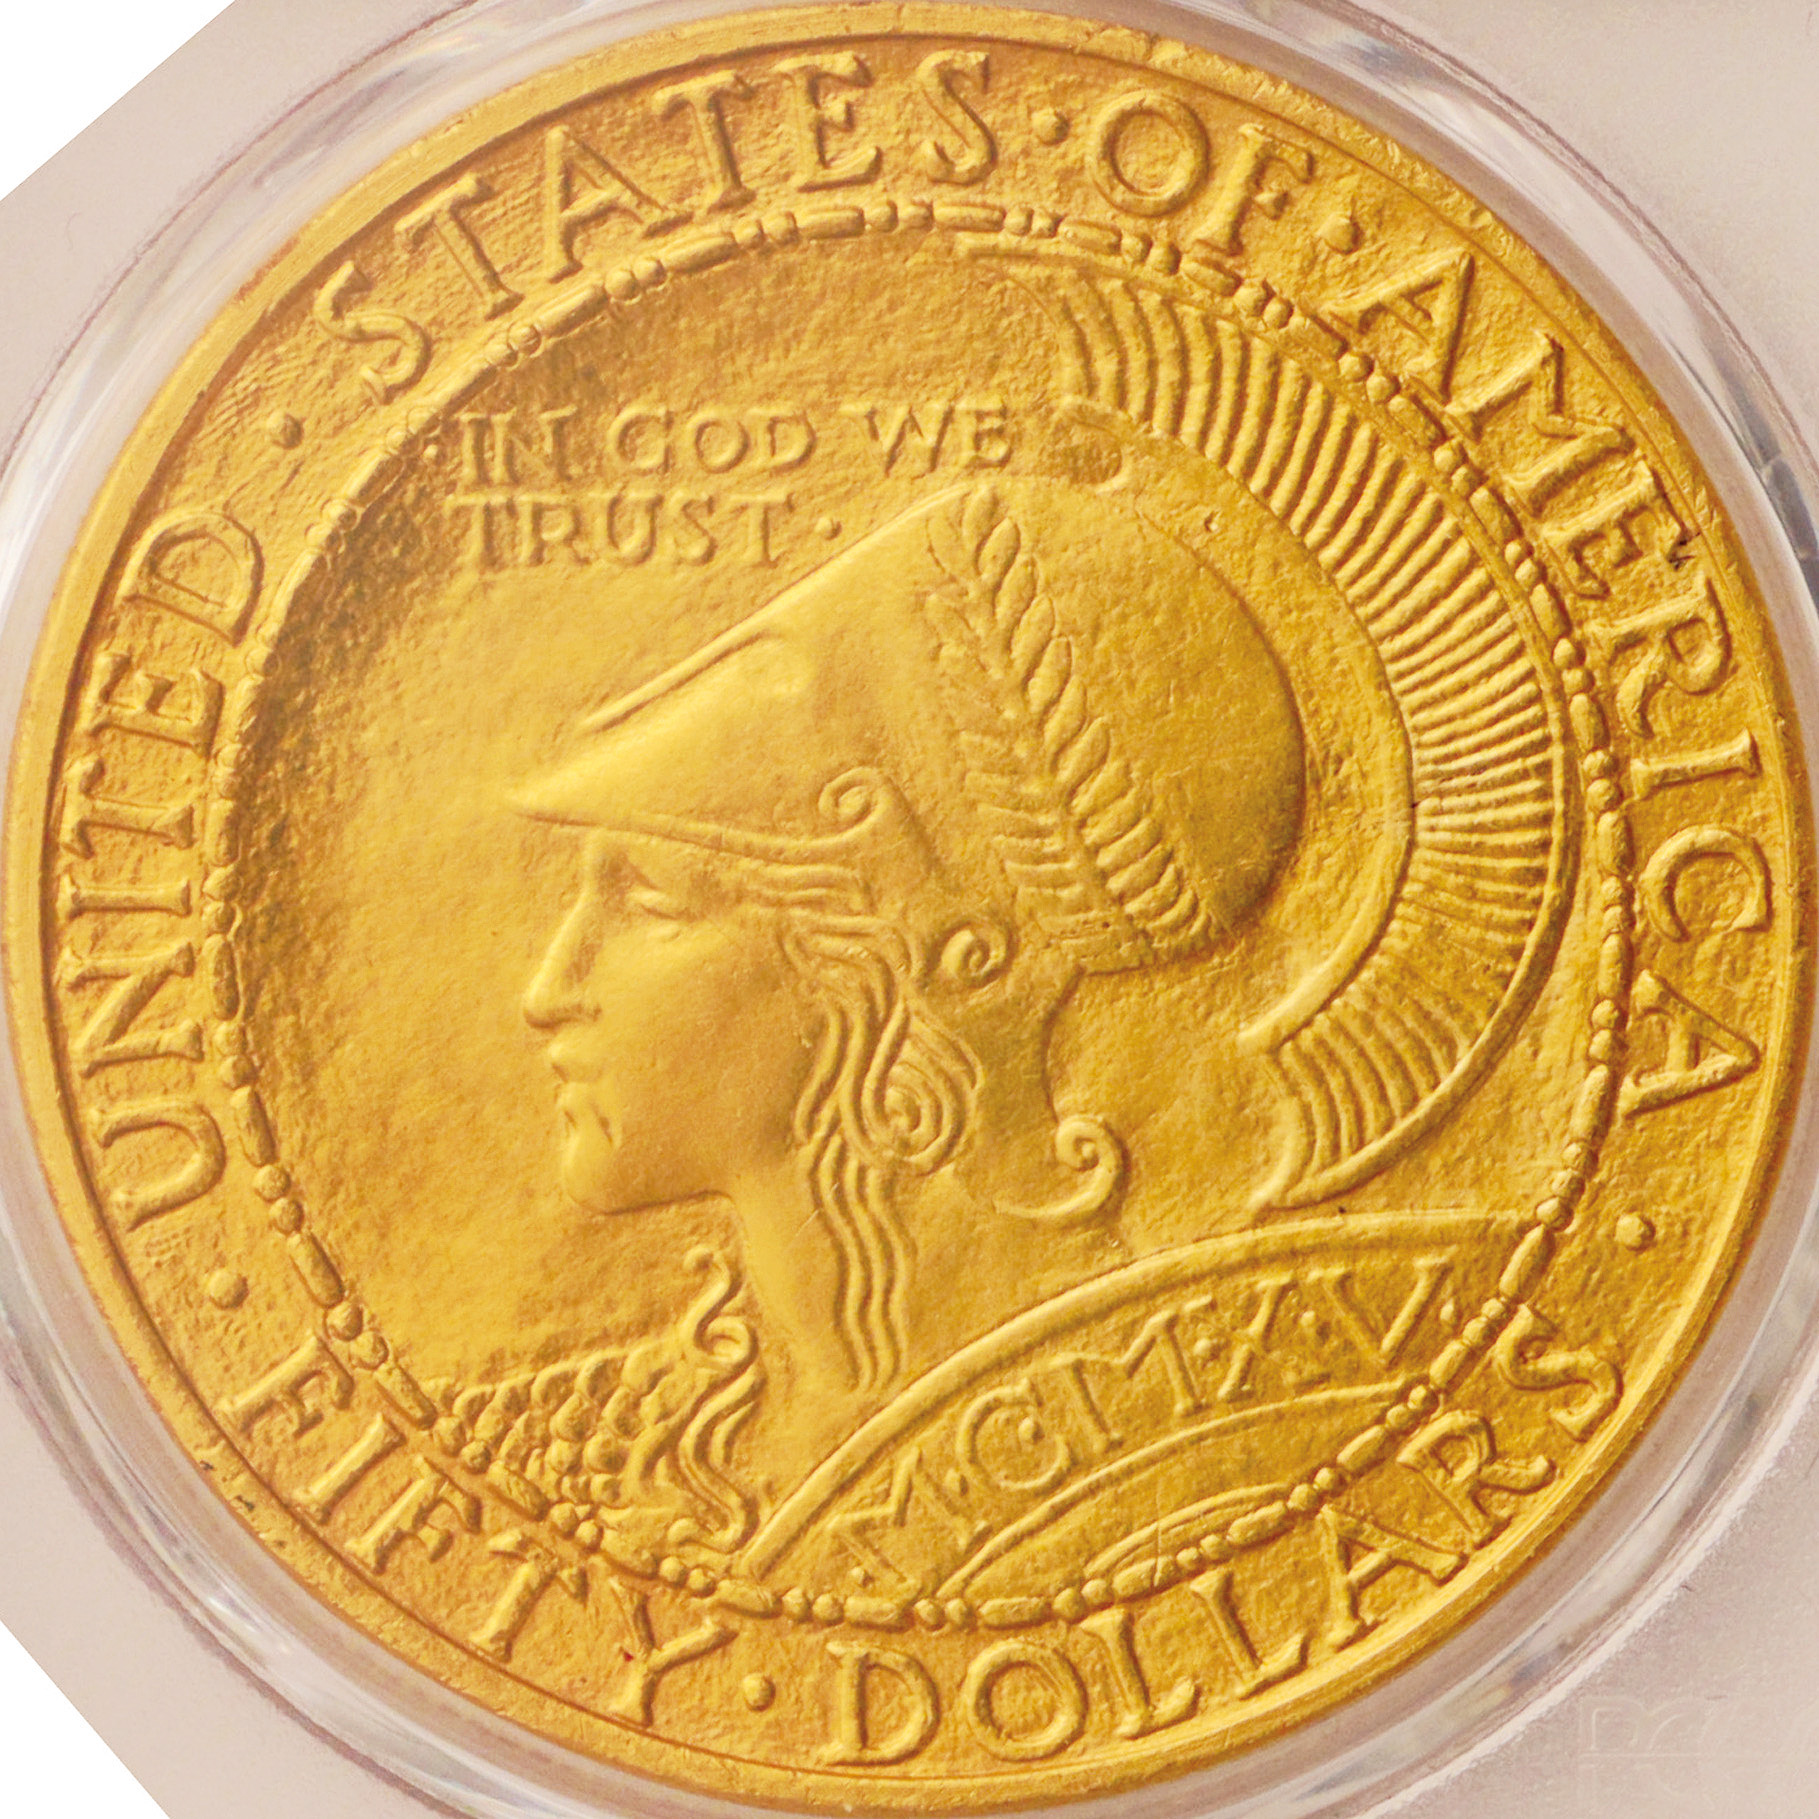 アメリカ合衆国 (United States) パナマ太平洋博覧会記念 50ドル金貨 